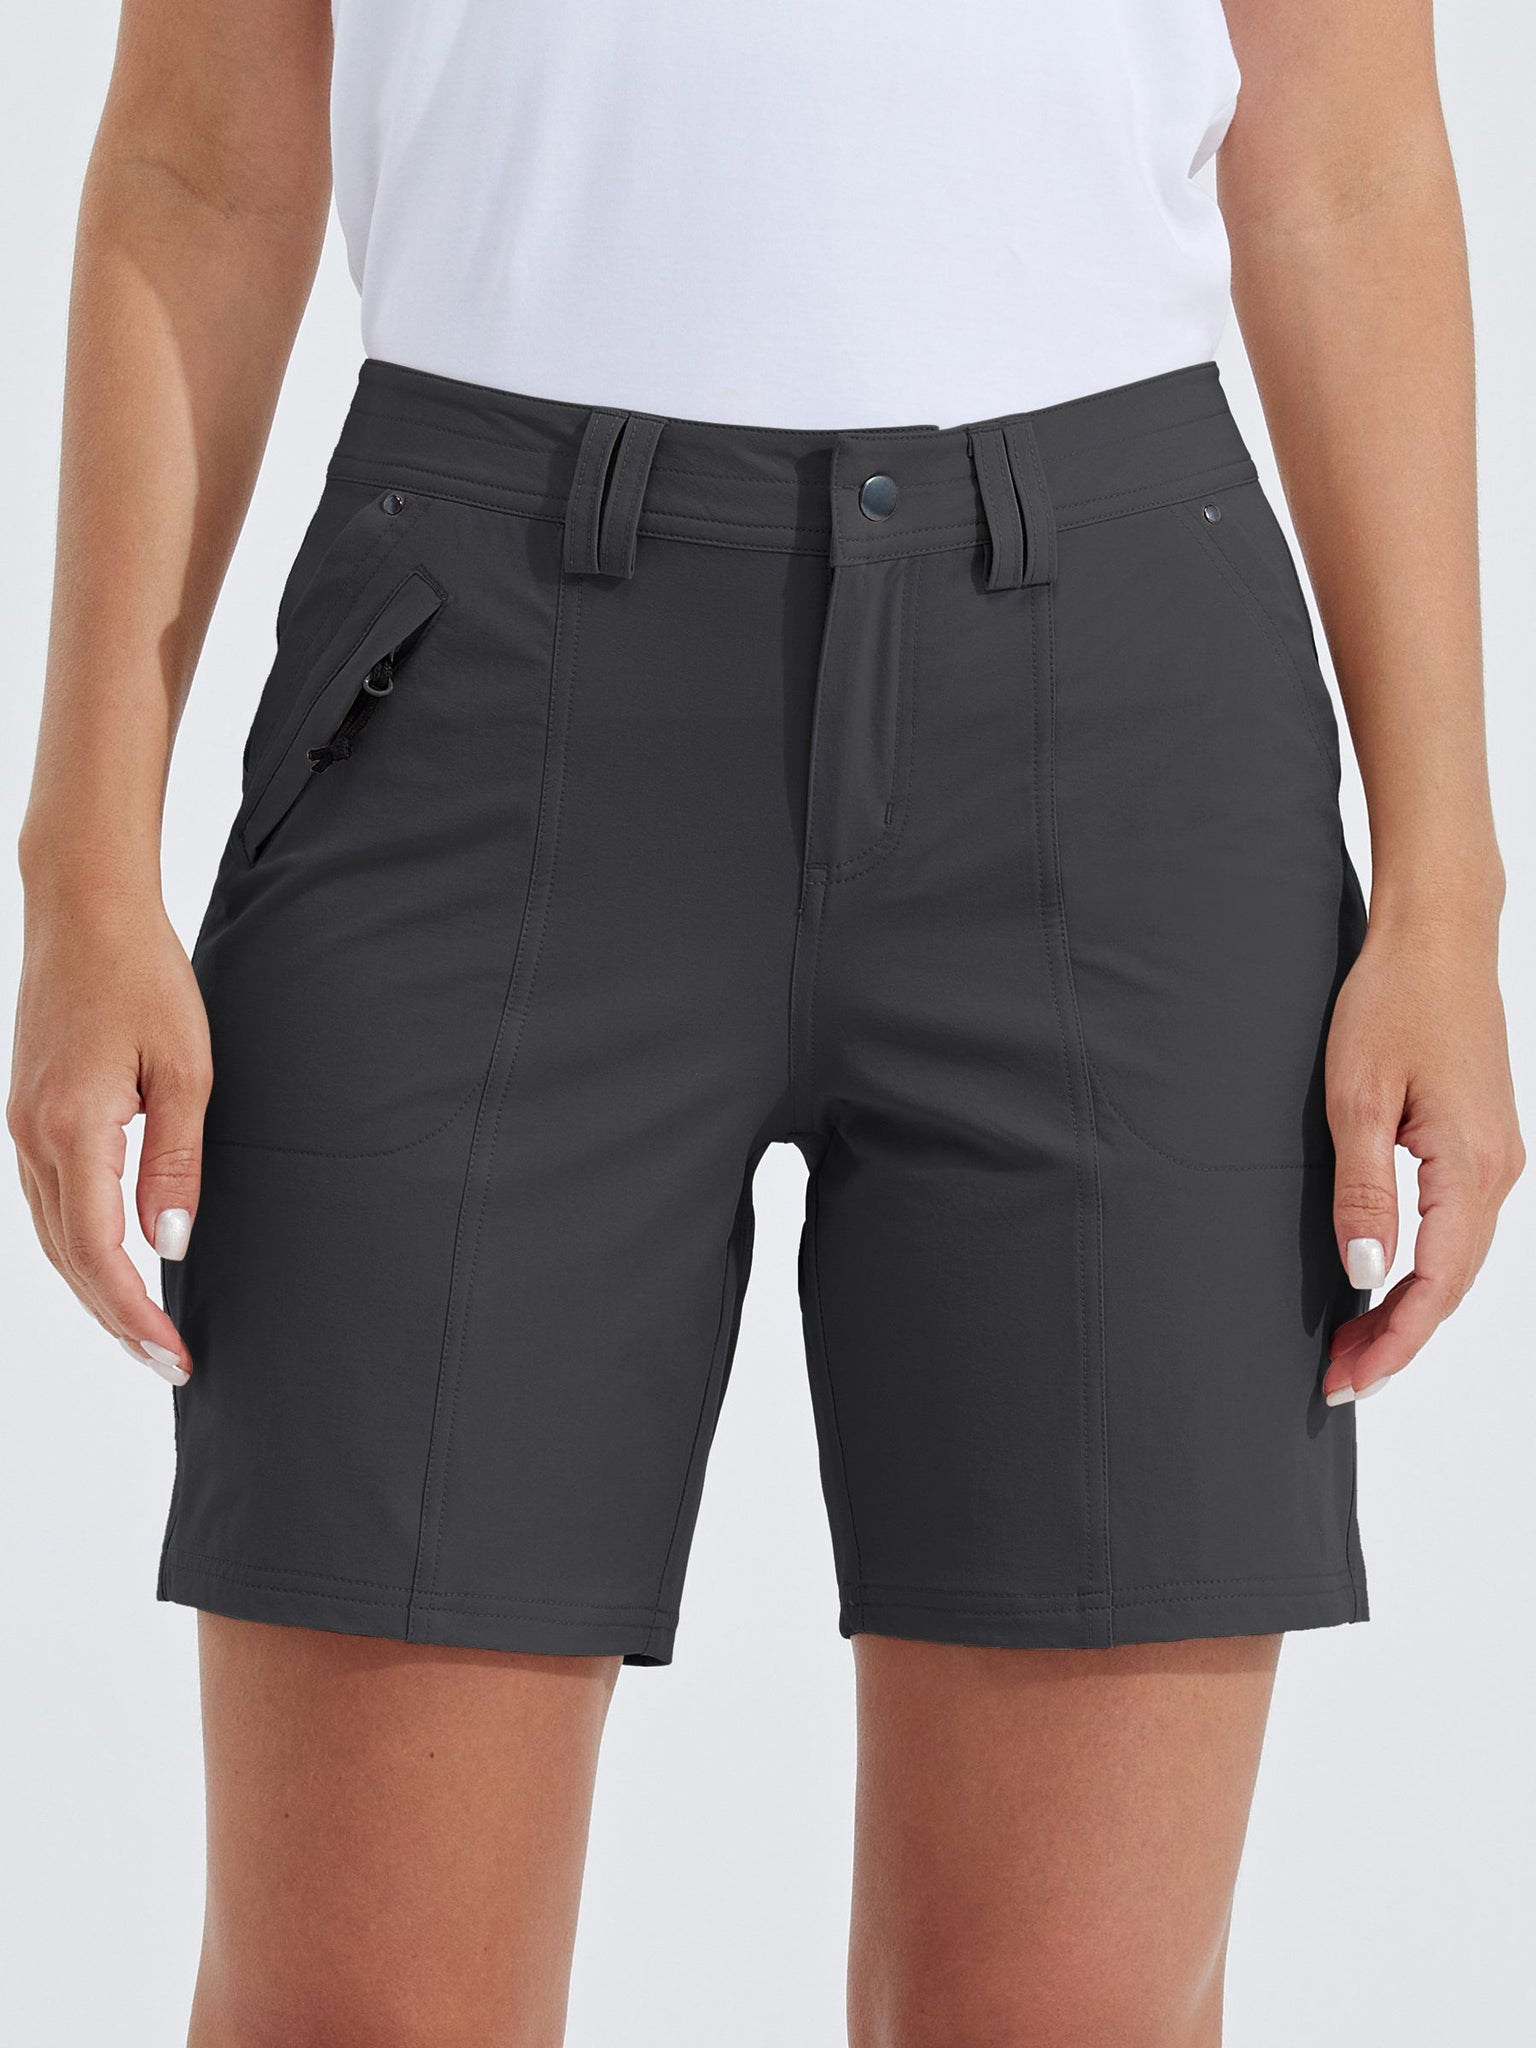 Women's Casual Golf Hiking 7 Inch Shorts